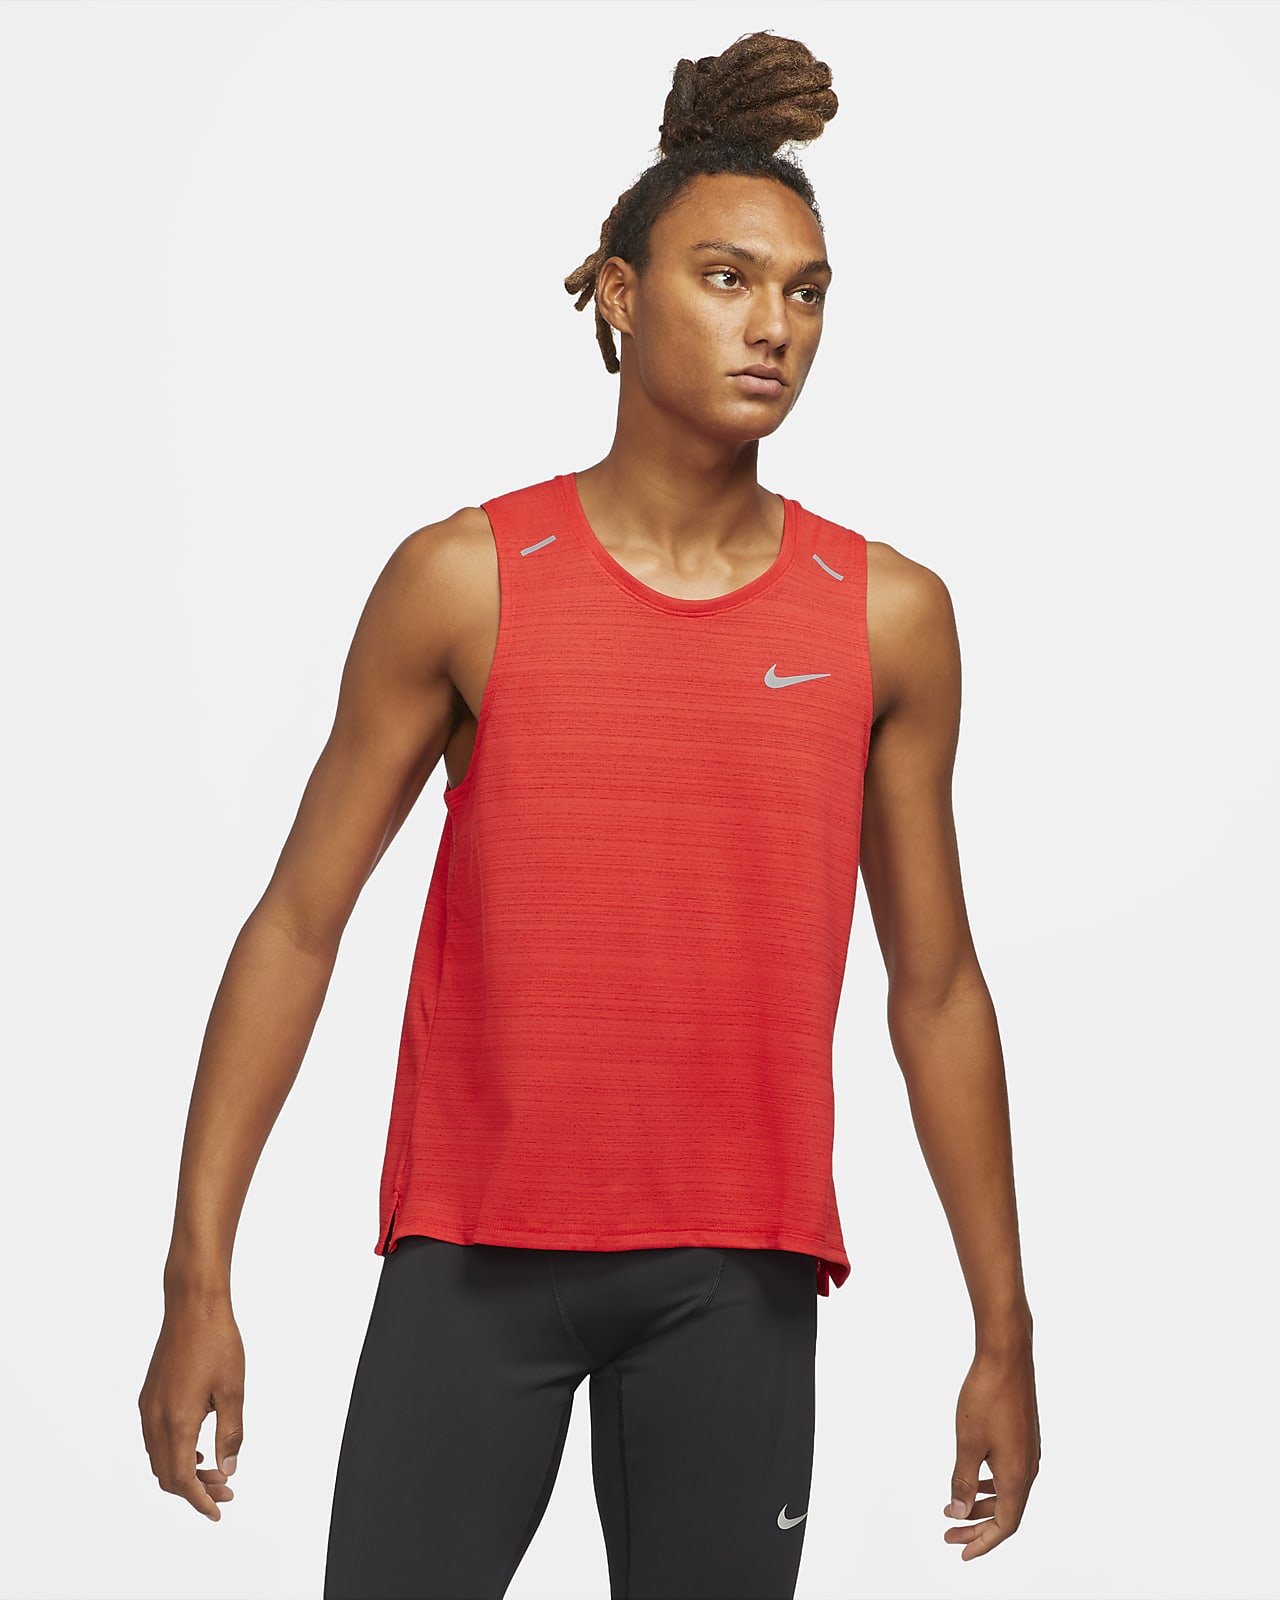 Verslinden Oneerlijkheid intellectueel Nike Dri-FIT Miler Men's Running Tank. Nike.com